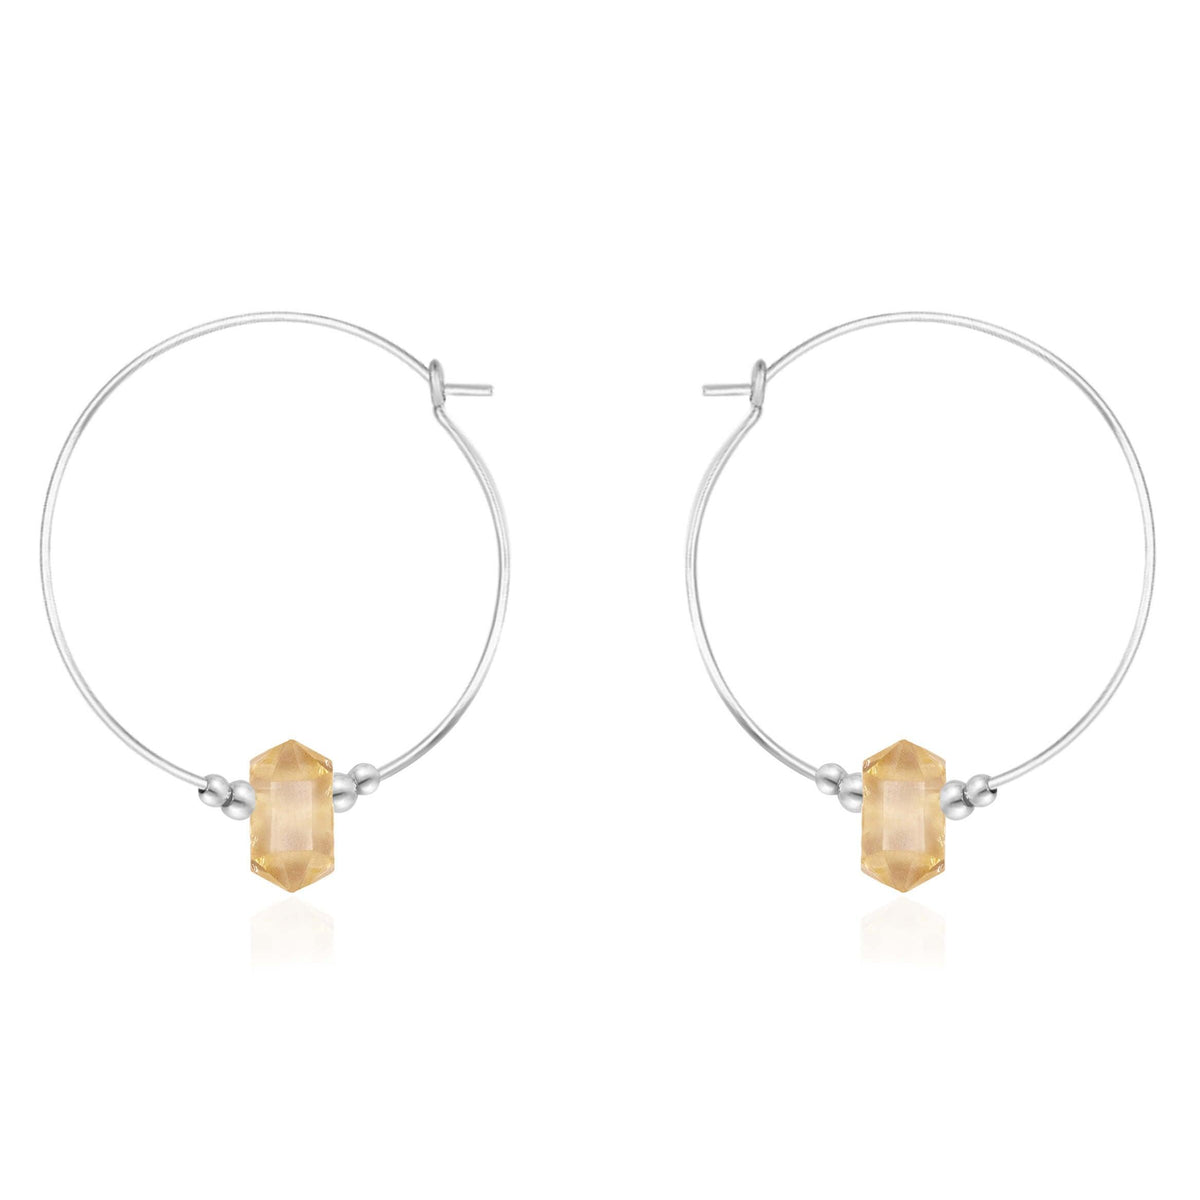 Large Double Terminated Crystal Hoop Earrings - Citrine - Sterling Silver - Luna Tide Handmade Jewellery